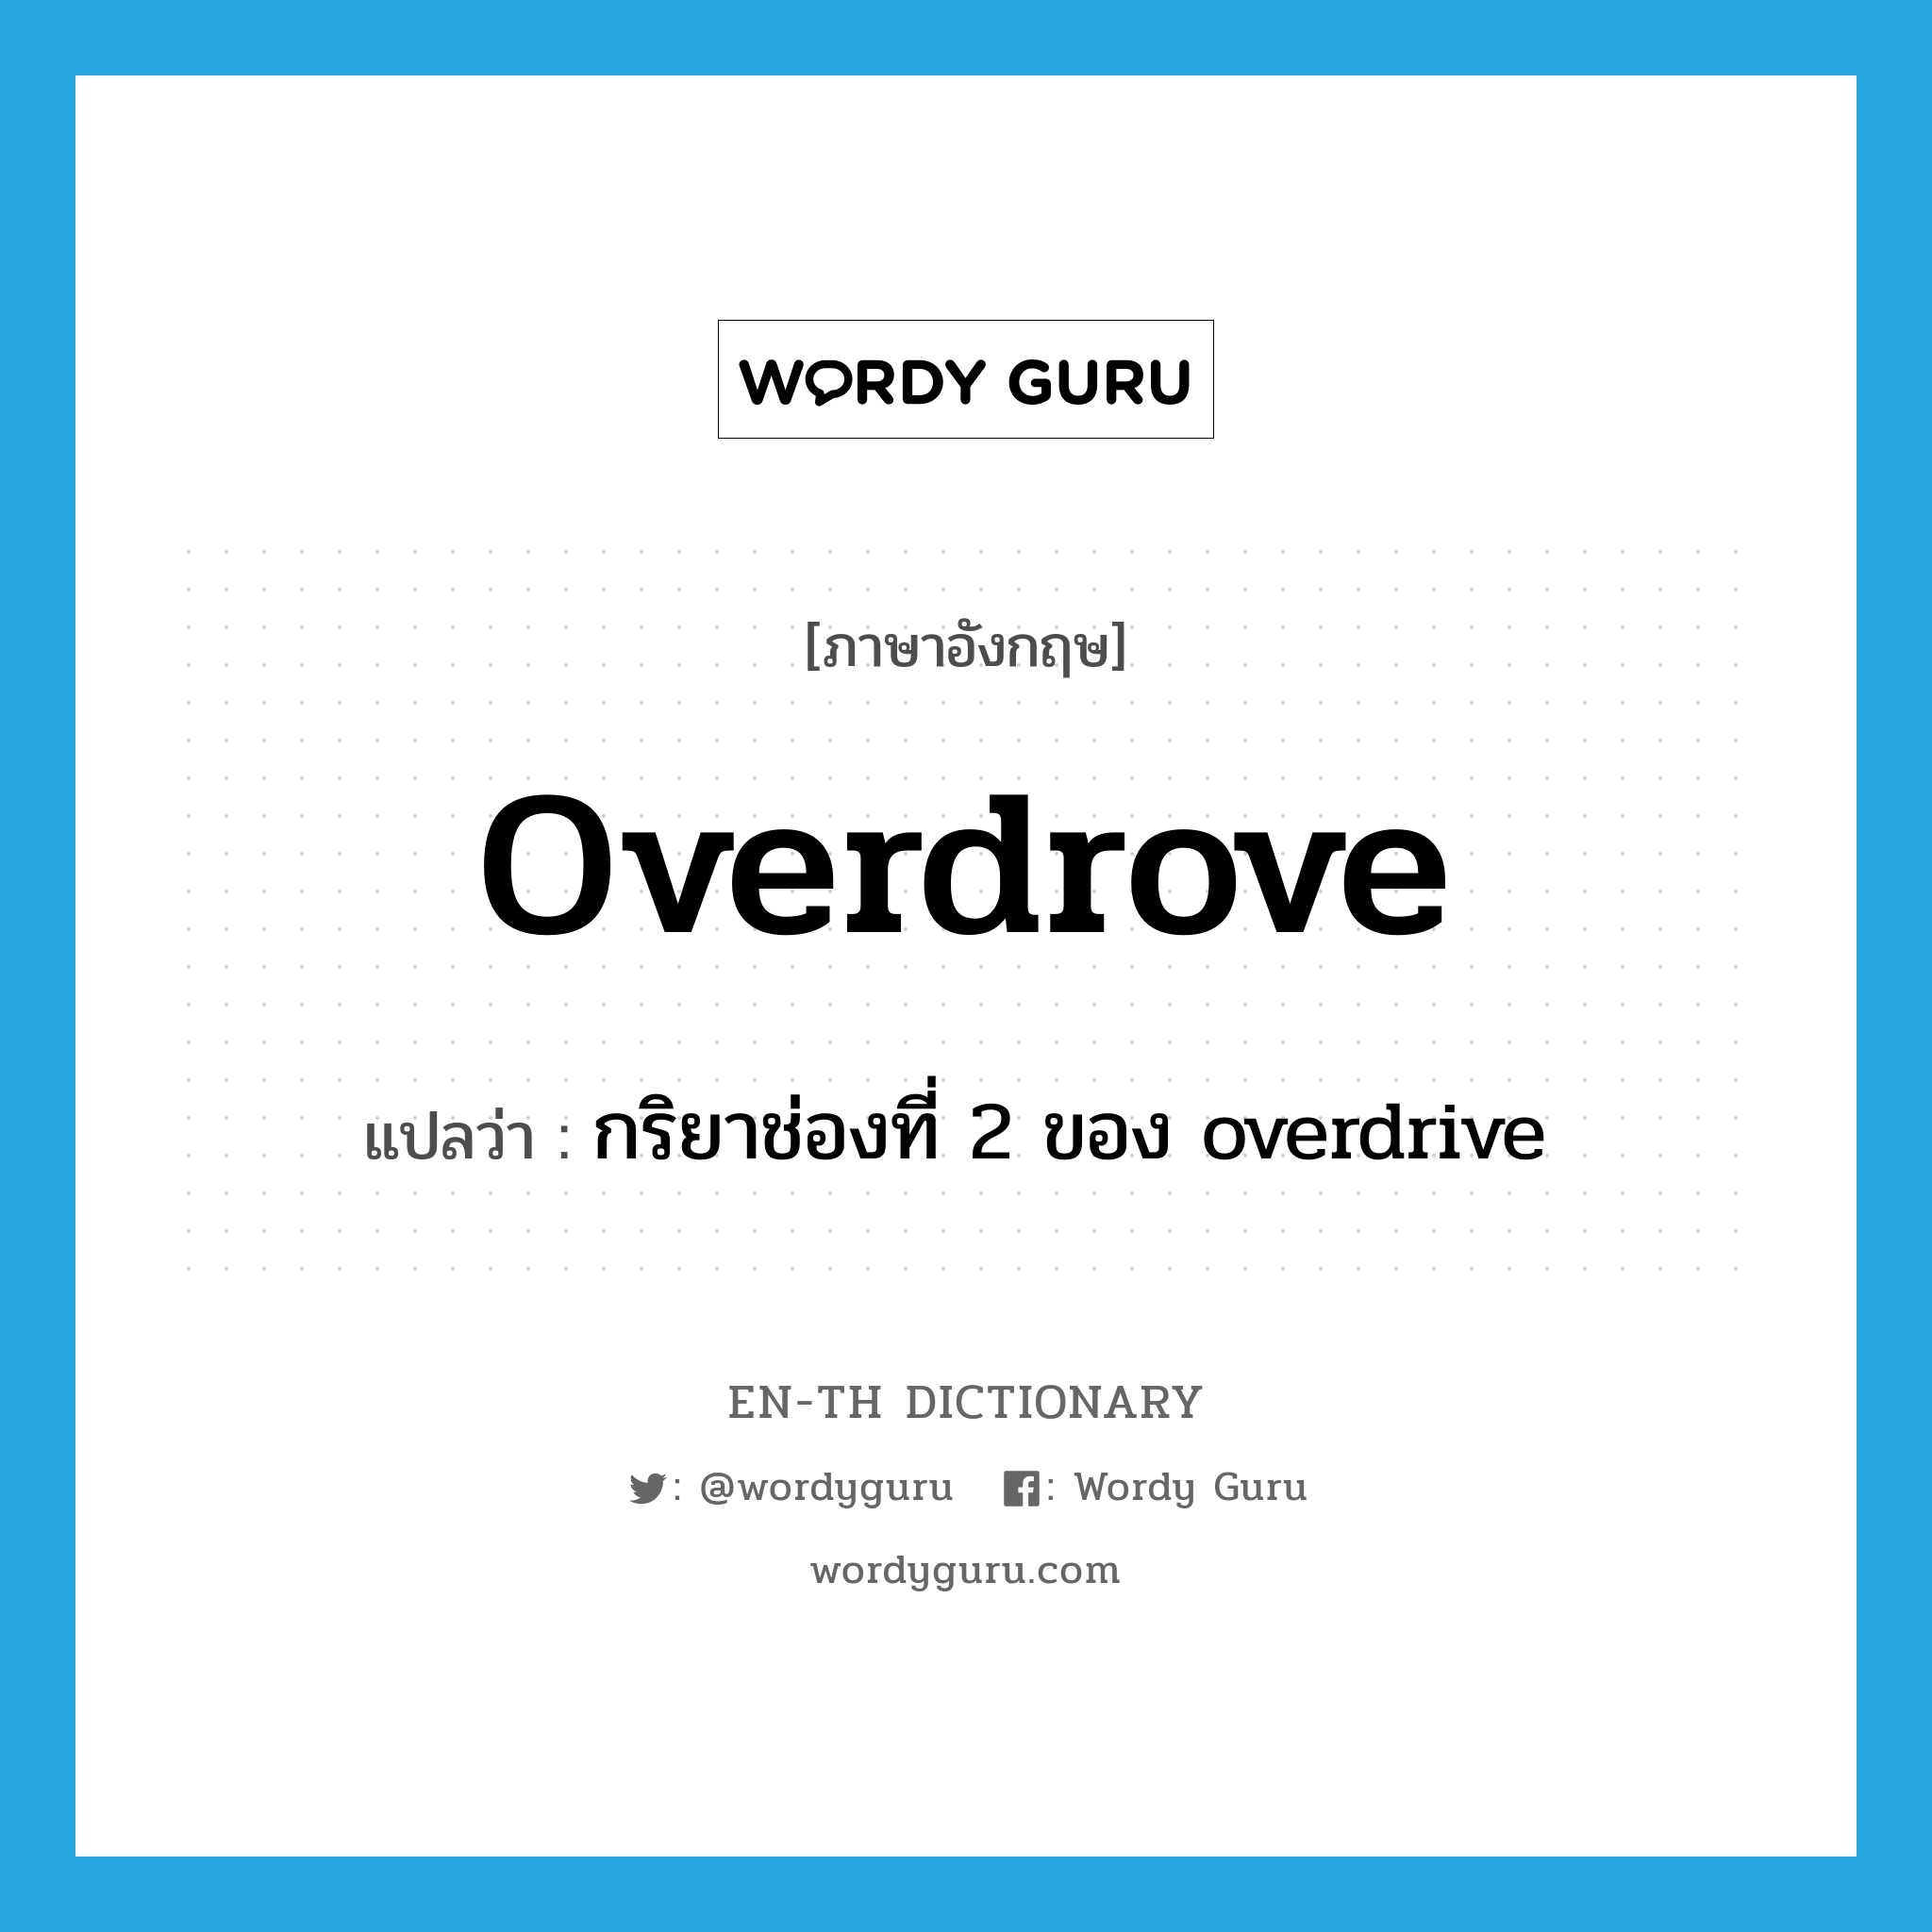 กริยาช่องที่ 2 ของ overdrive ภาษาอังกฤษ?, คำศัพท์ภาษาอังกฤษ กริยาช่องที่ 2 ของ overdrive แปลว่า overdrove ประเภท VT หมวด VT